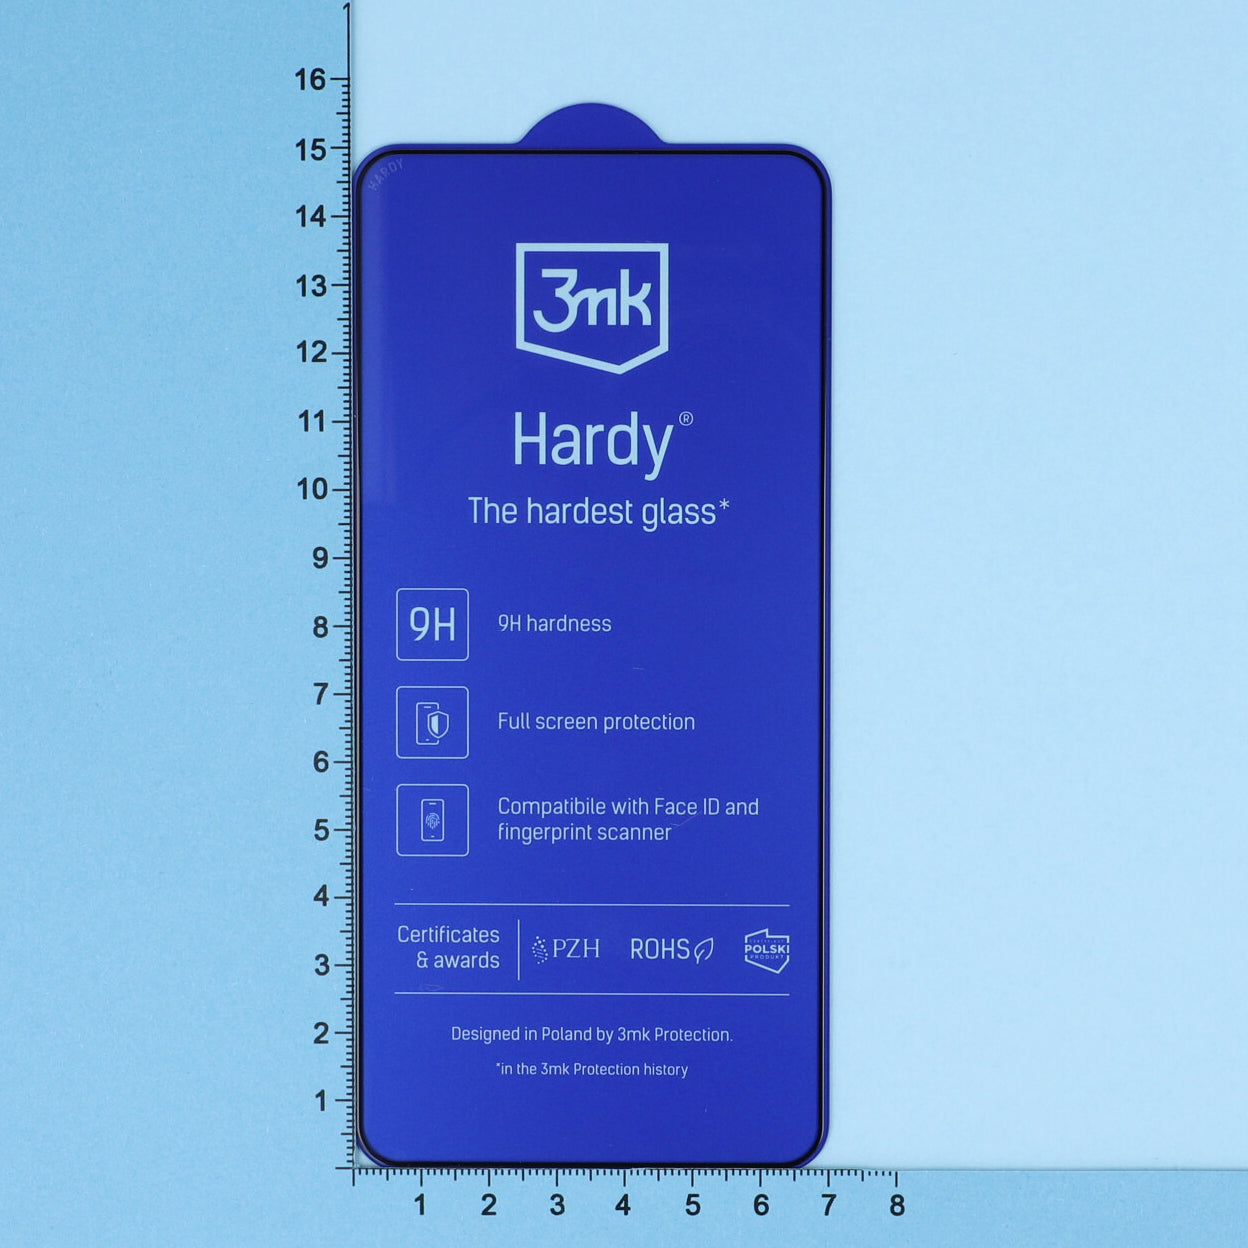 Gehärtetes Glas 3mk Hardy für Galaxy S21 FE 5G, schwarzer Rahmen